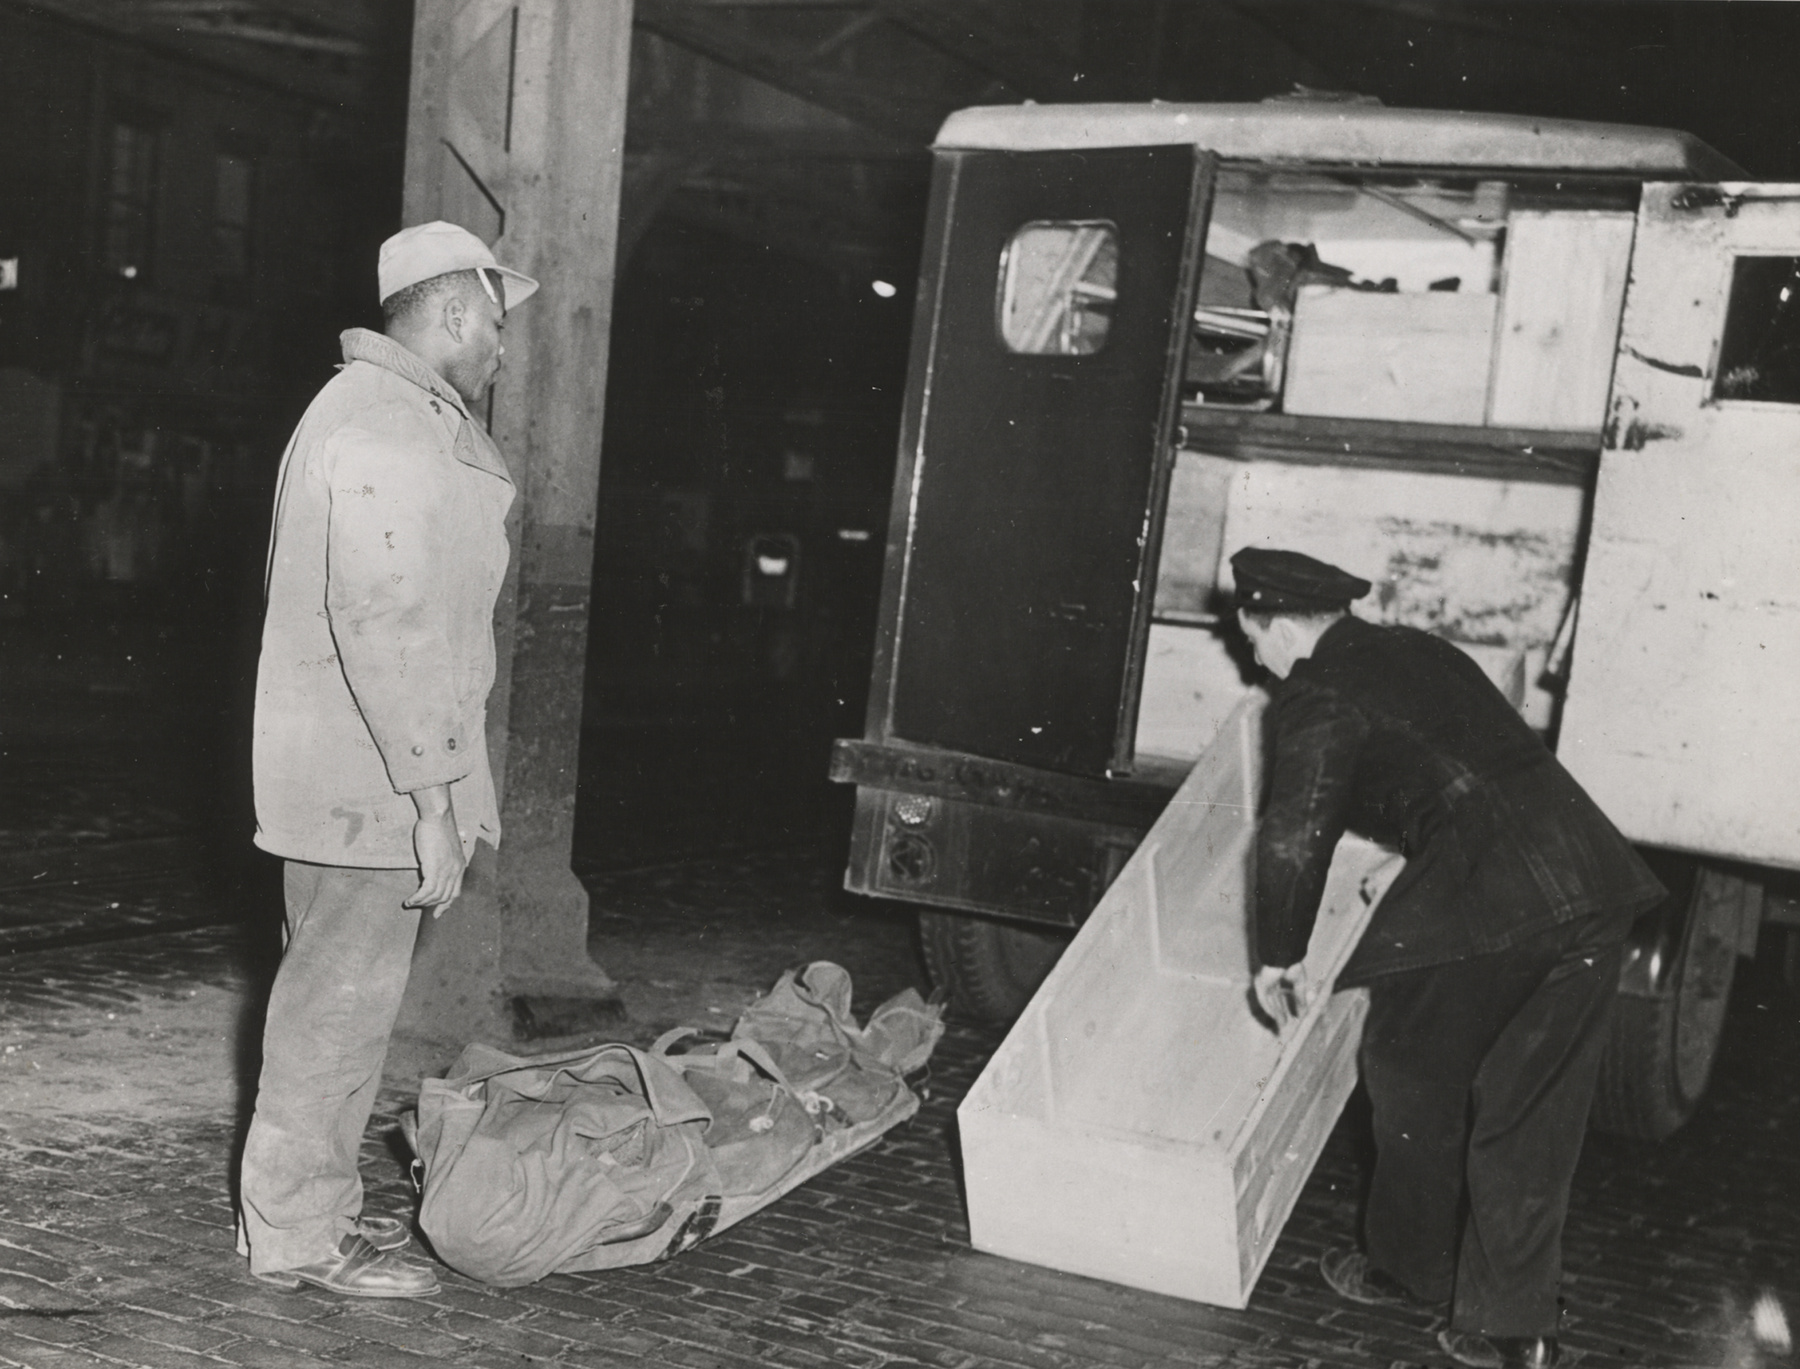 Megkötözött holttestet találtak egy utazóbőröndben, Brooklynban.